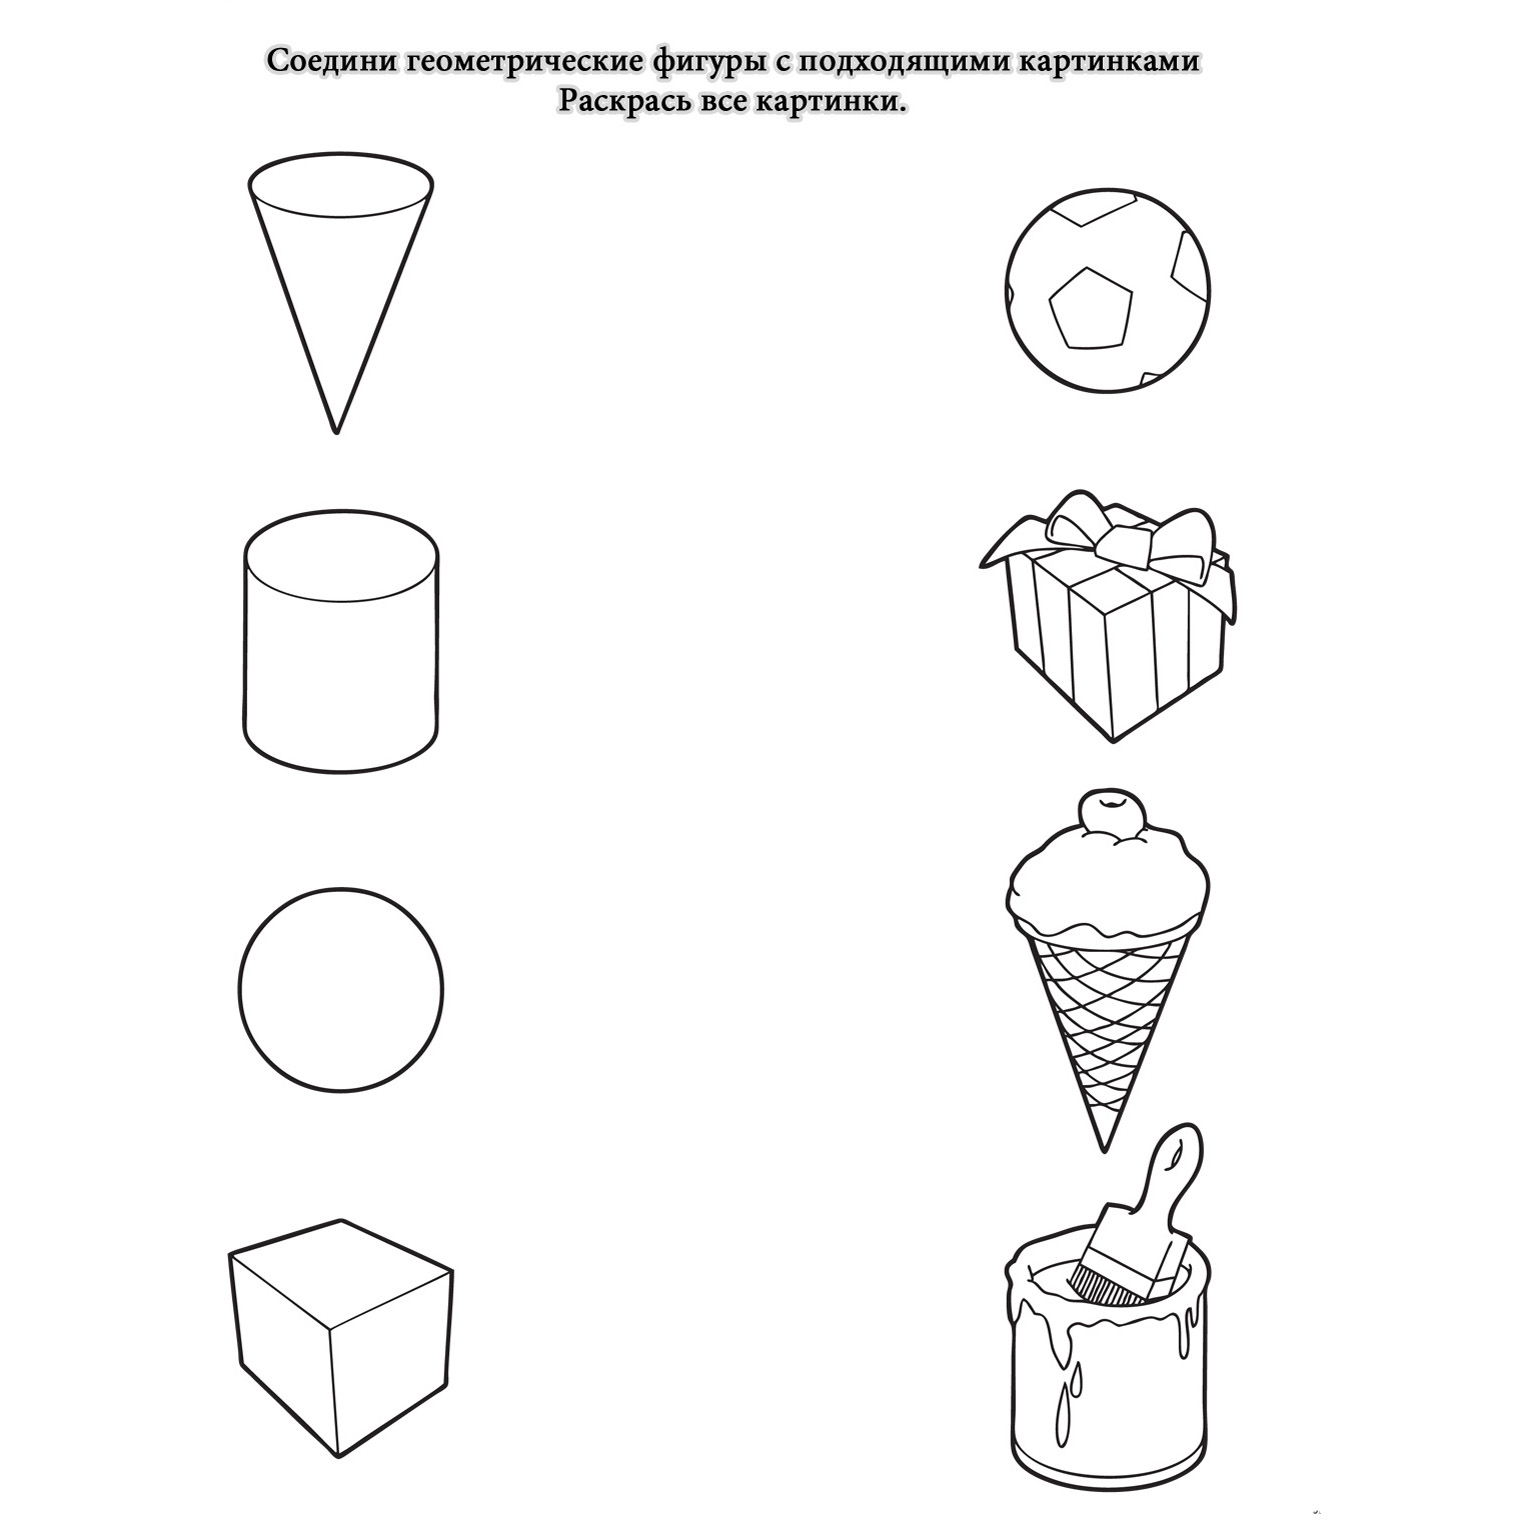 Шаблоны объемных геометрических фигур для вырезания из бумаги: трафарет скачать и распечатать